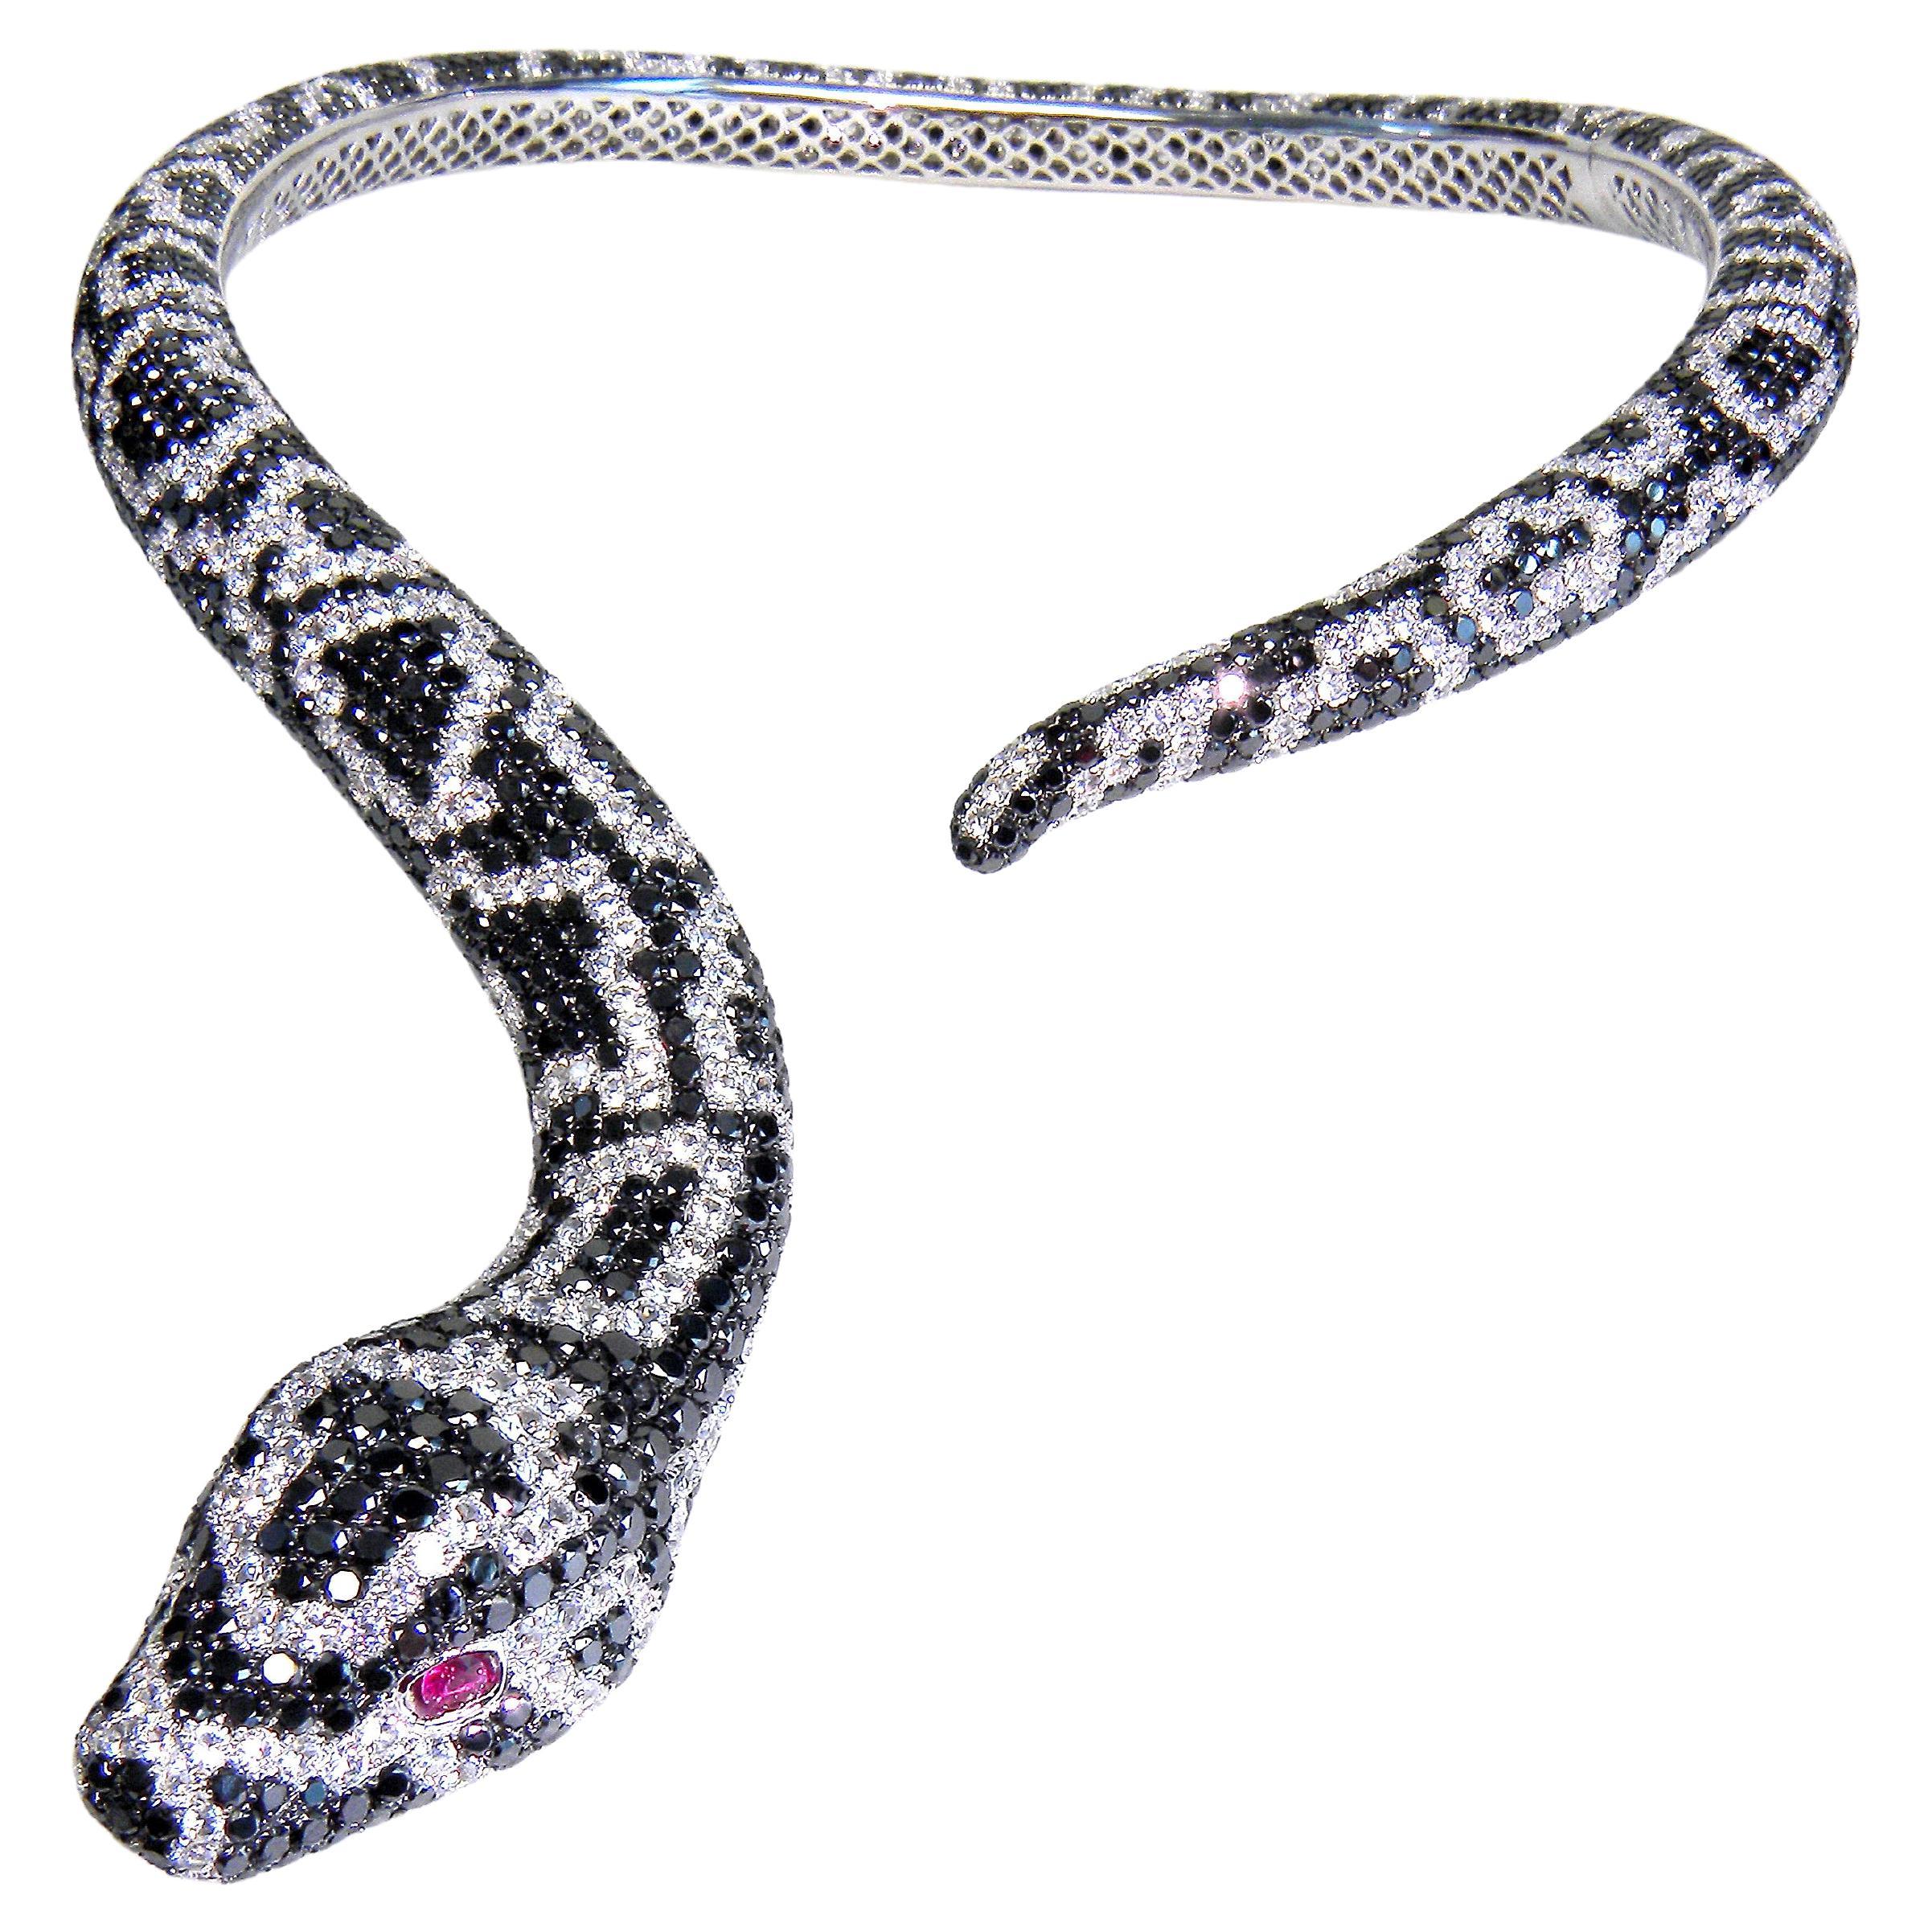 Collier Serpenti en or blanc 18 carats, diamants noirs, saphirs incolores et rubis